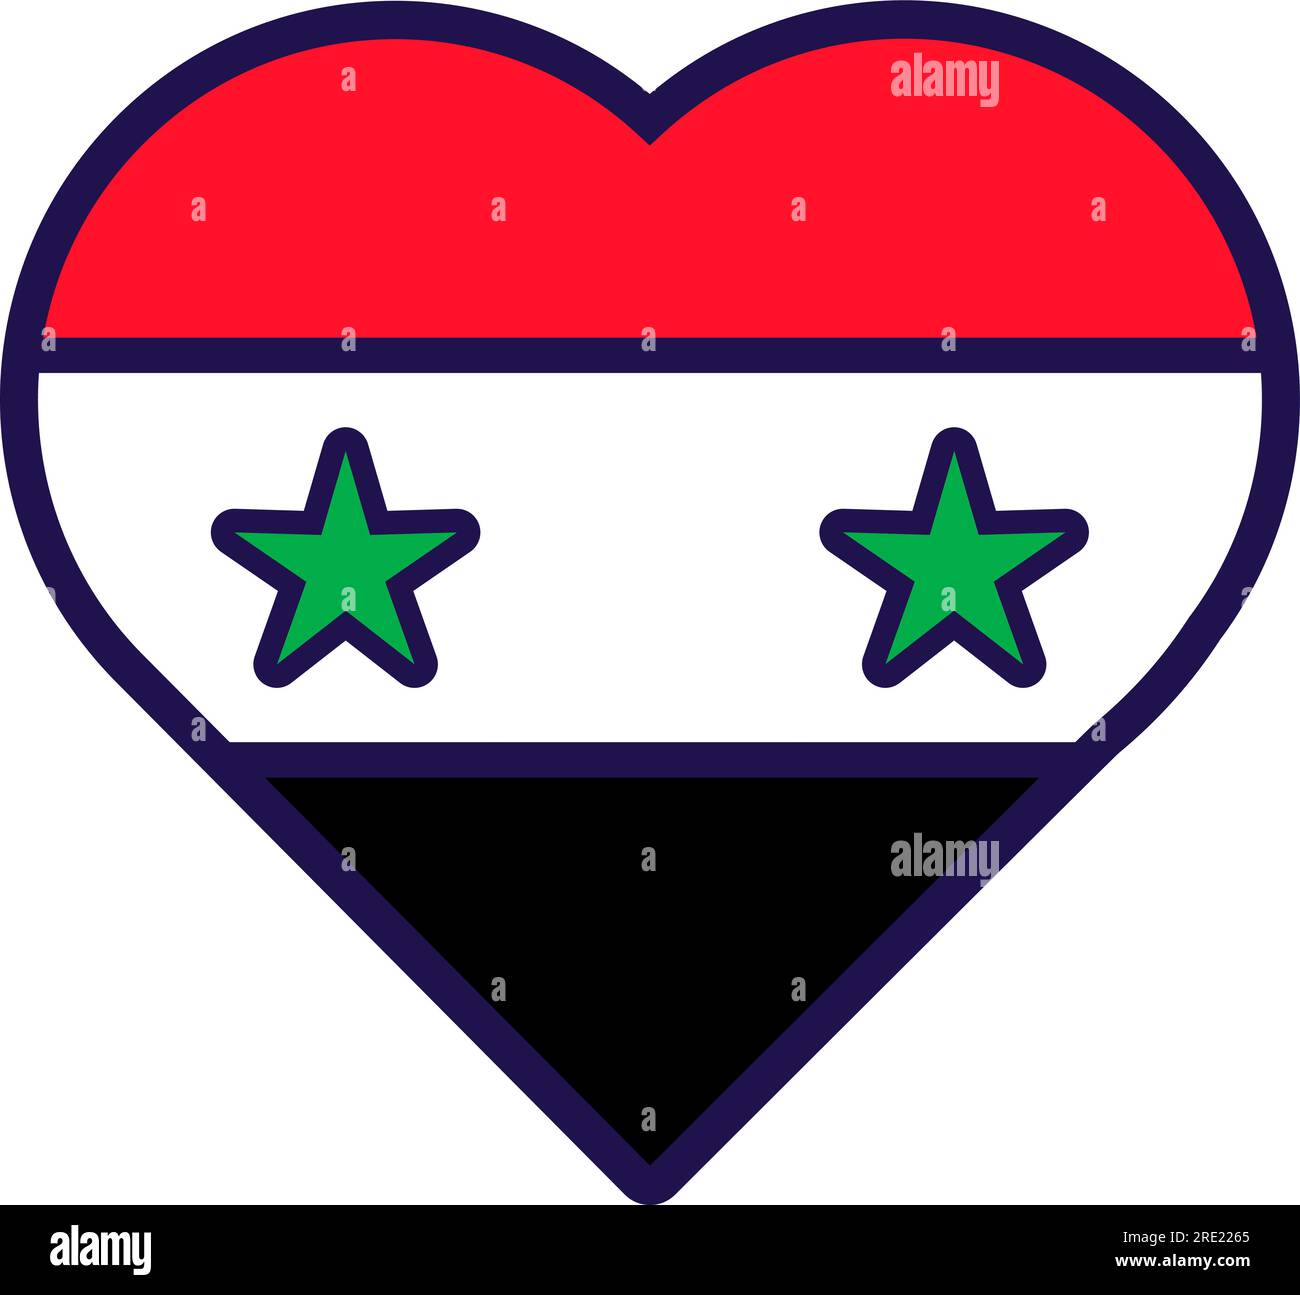 Patriot Heart in den Farben der nationalen syrischen Flagge. Festliches Element, Attribute des syrischen Unabhängigkeitstages. Cartoon-Vektorsymbol in nationalen Farben des Landes Stock Vektor